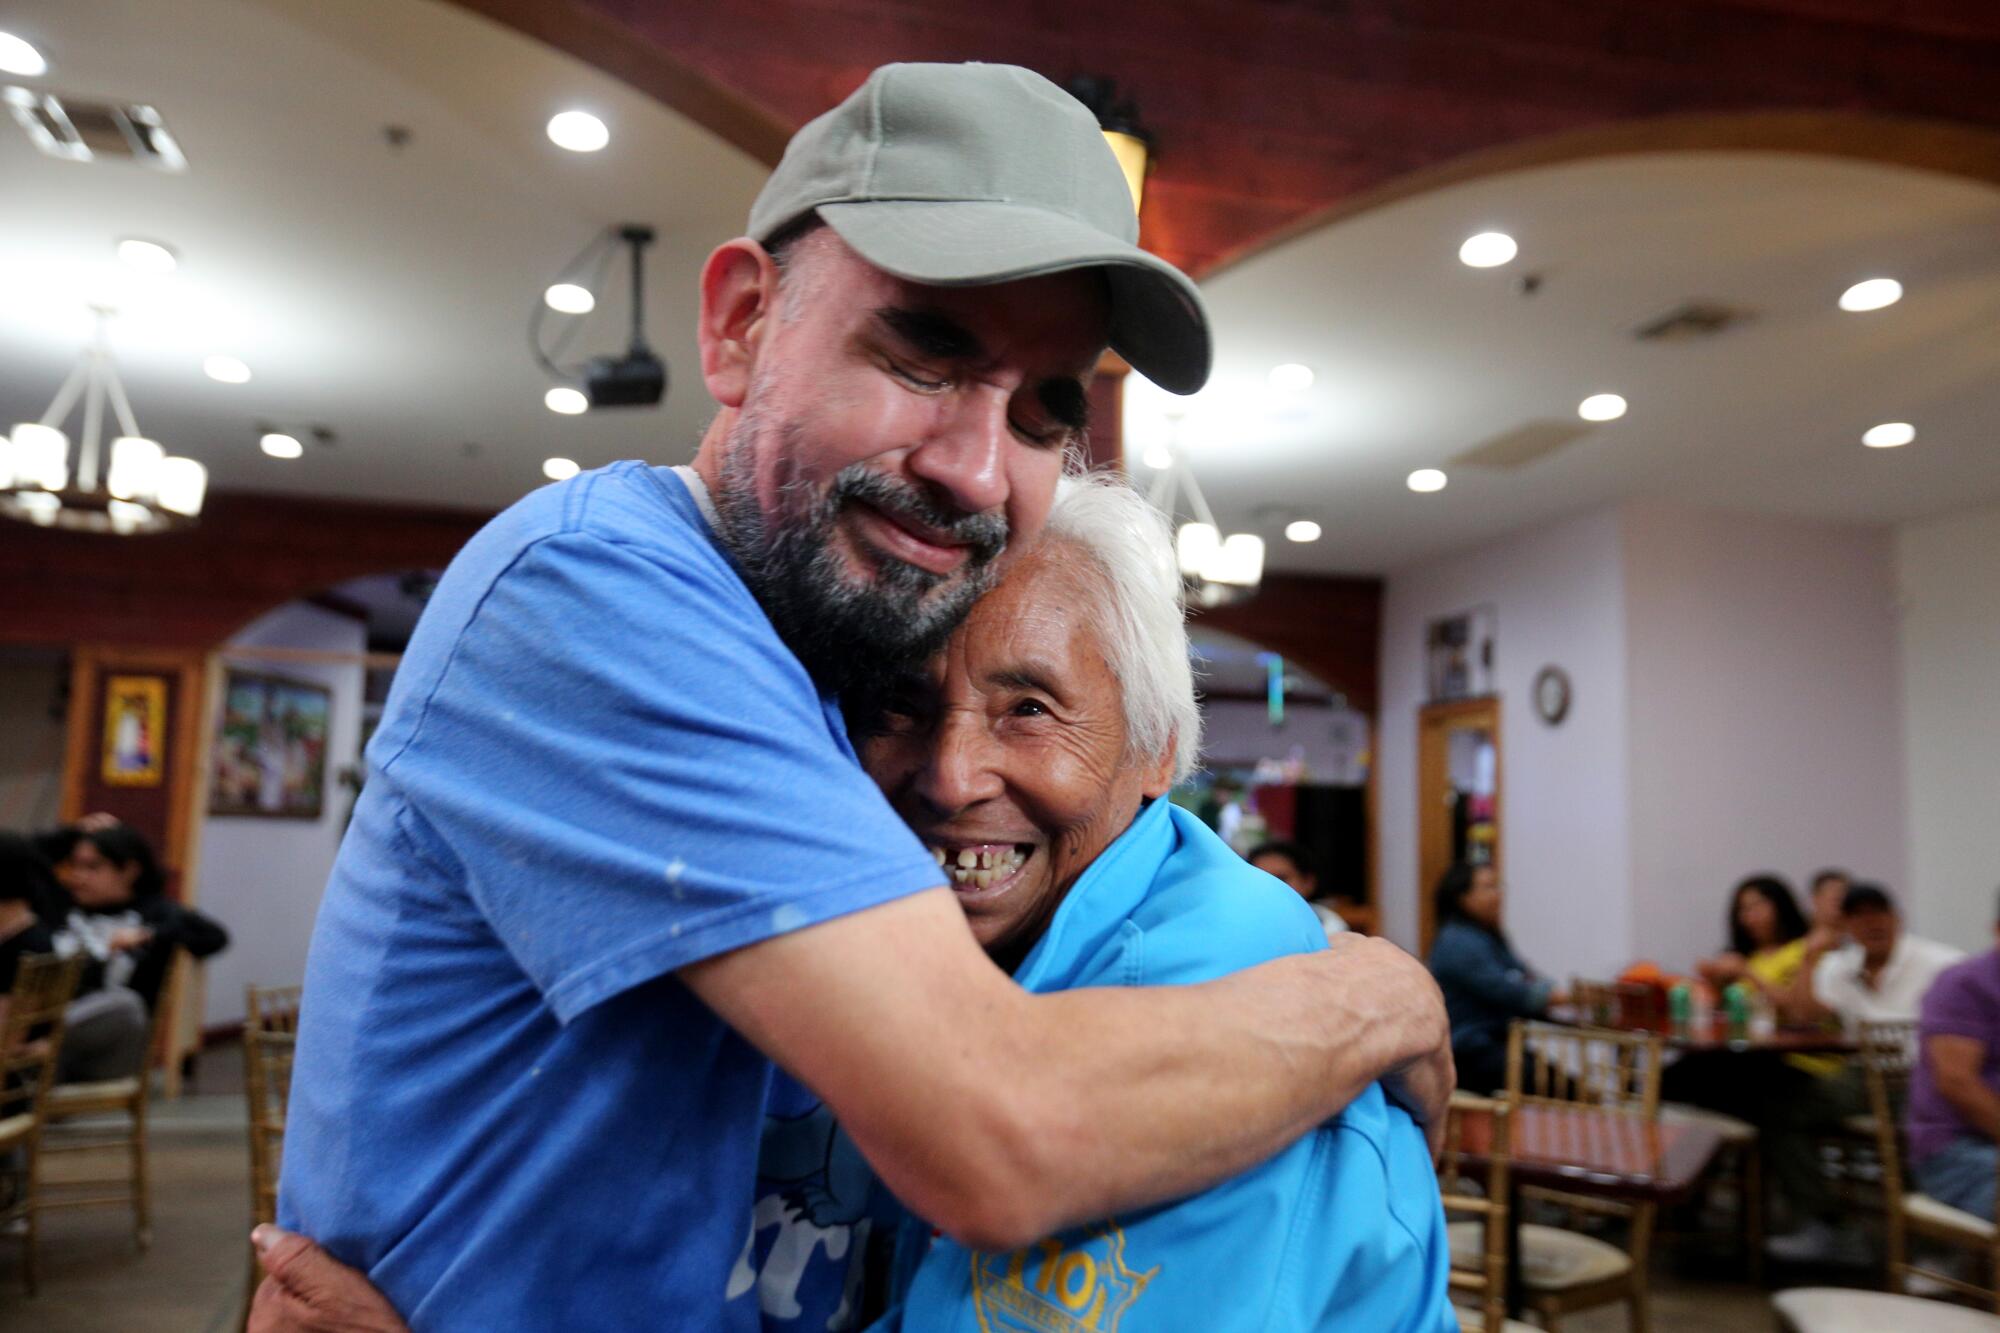 Alberto Martinez, 53, hugs his mother Irene Hernandez Mejia, 81